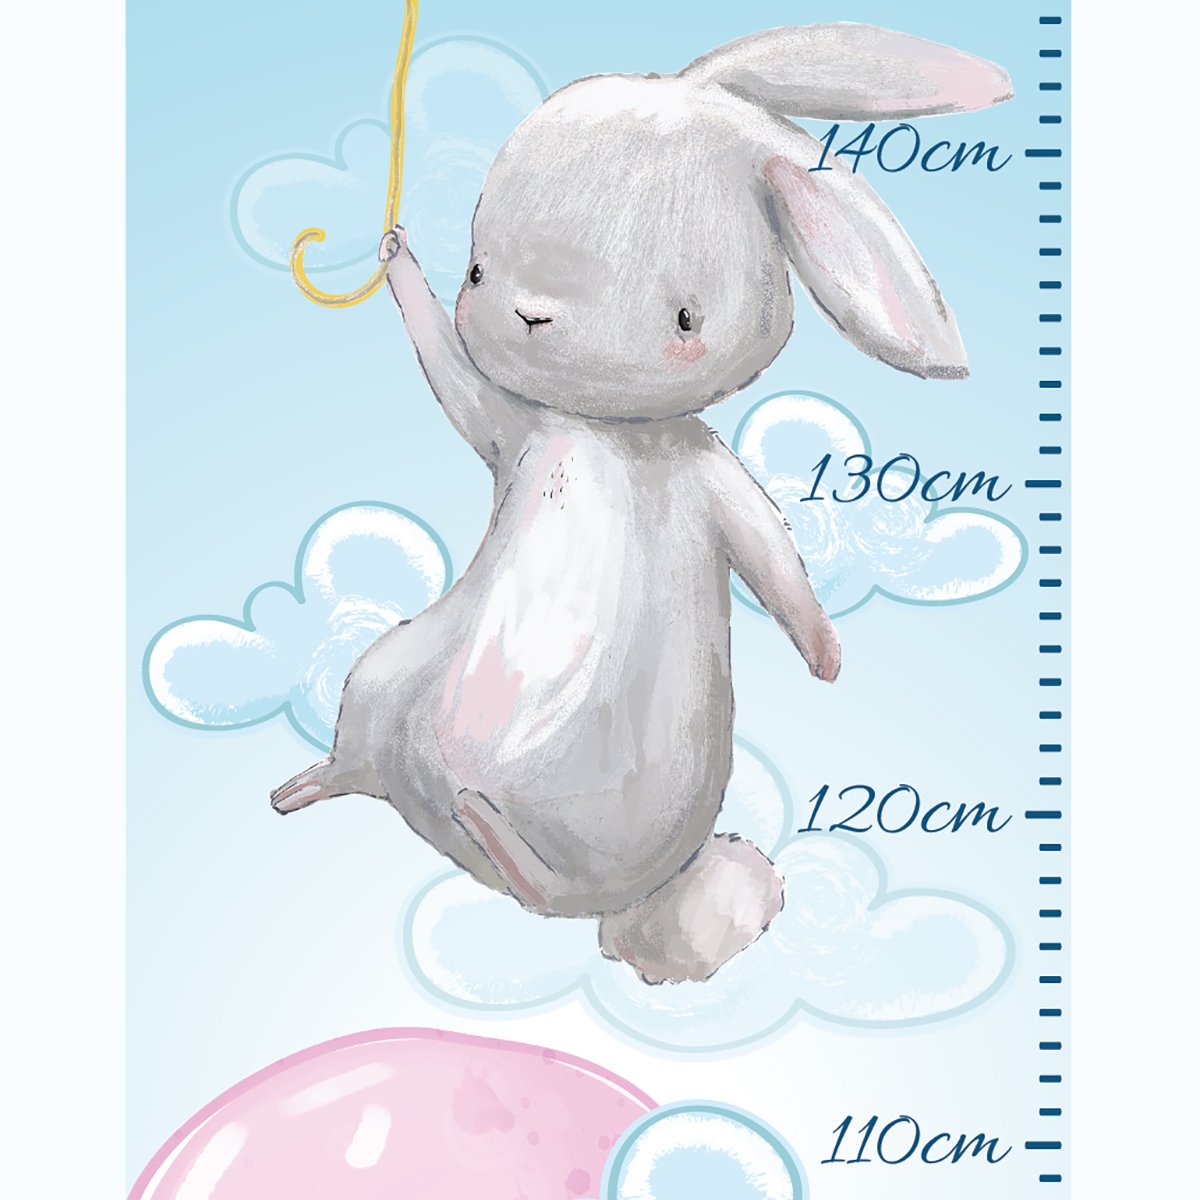 Naklejka na ścianę miarka wzrostu - balonik i latający królik#kolor_rozowy